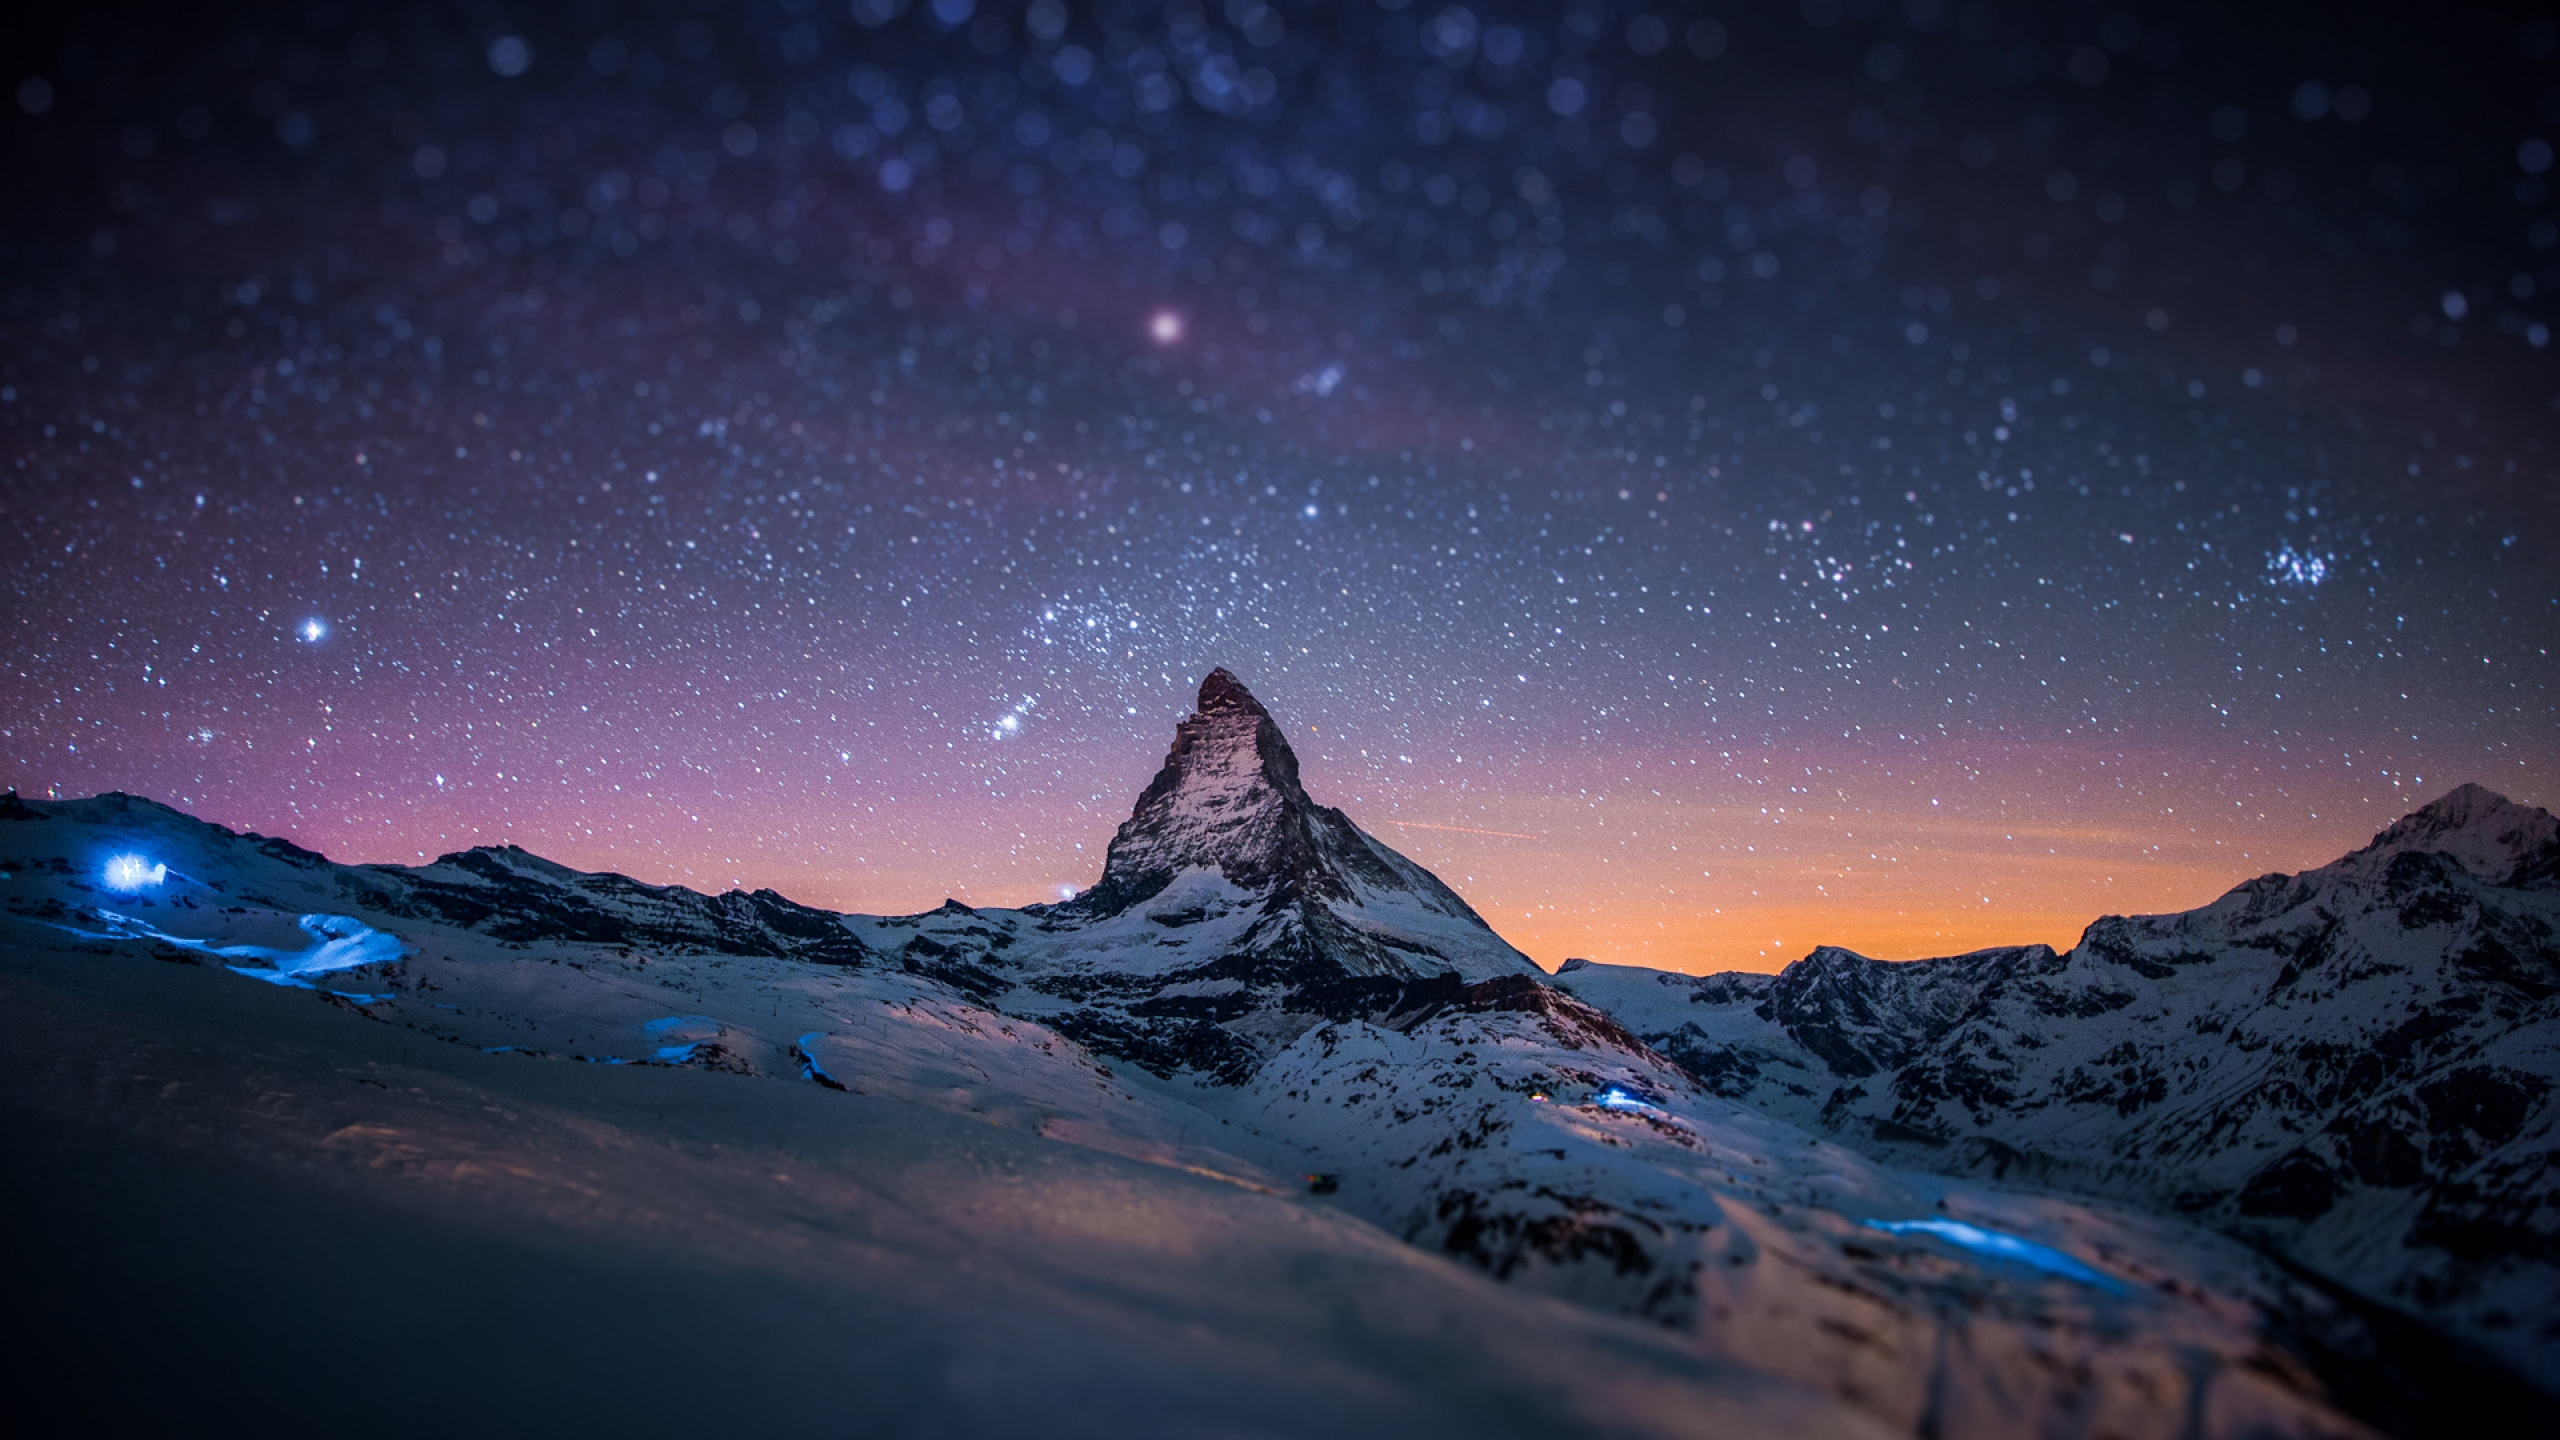 Montaña Cubierta de Nieve Bajo la Noche Estrellada. Wallpaper in 2560x1440 Resolution